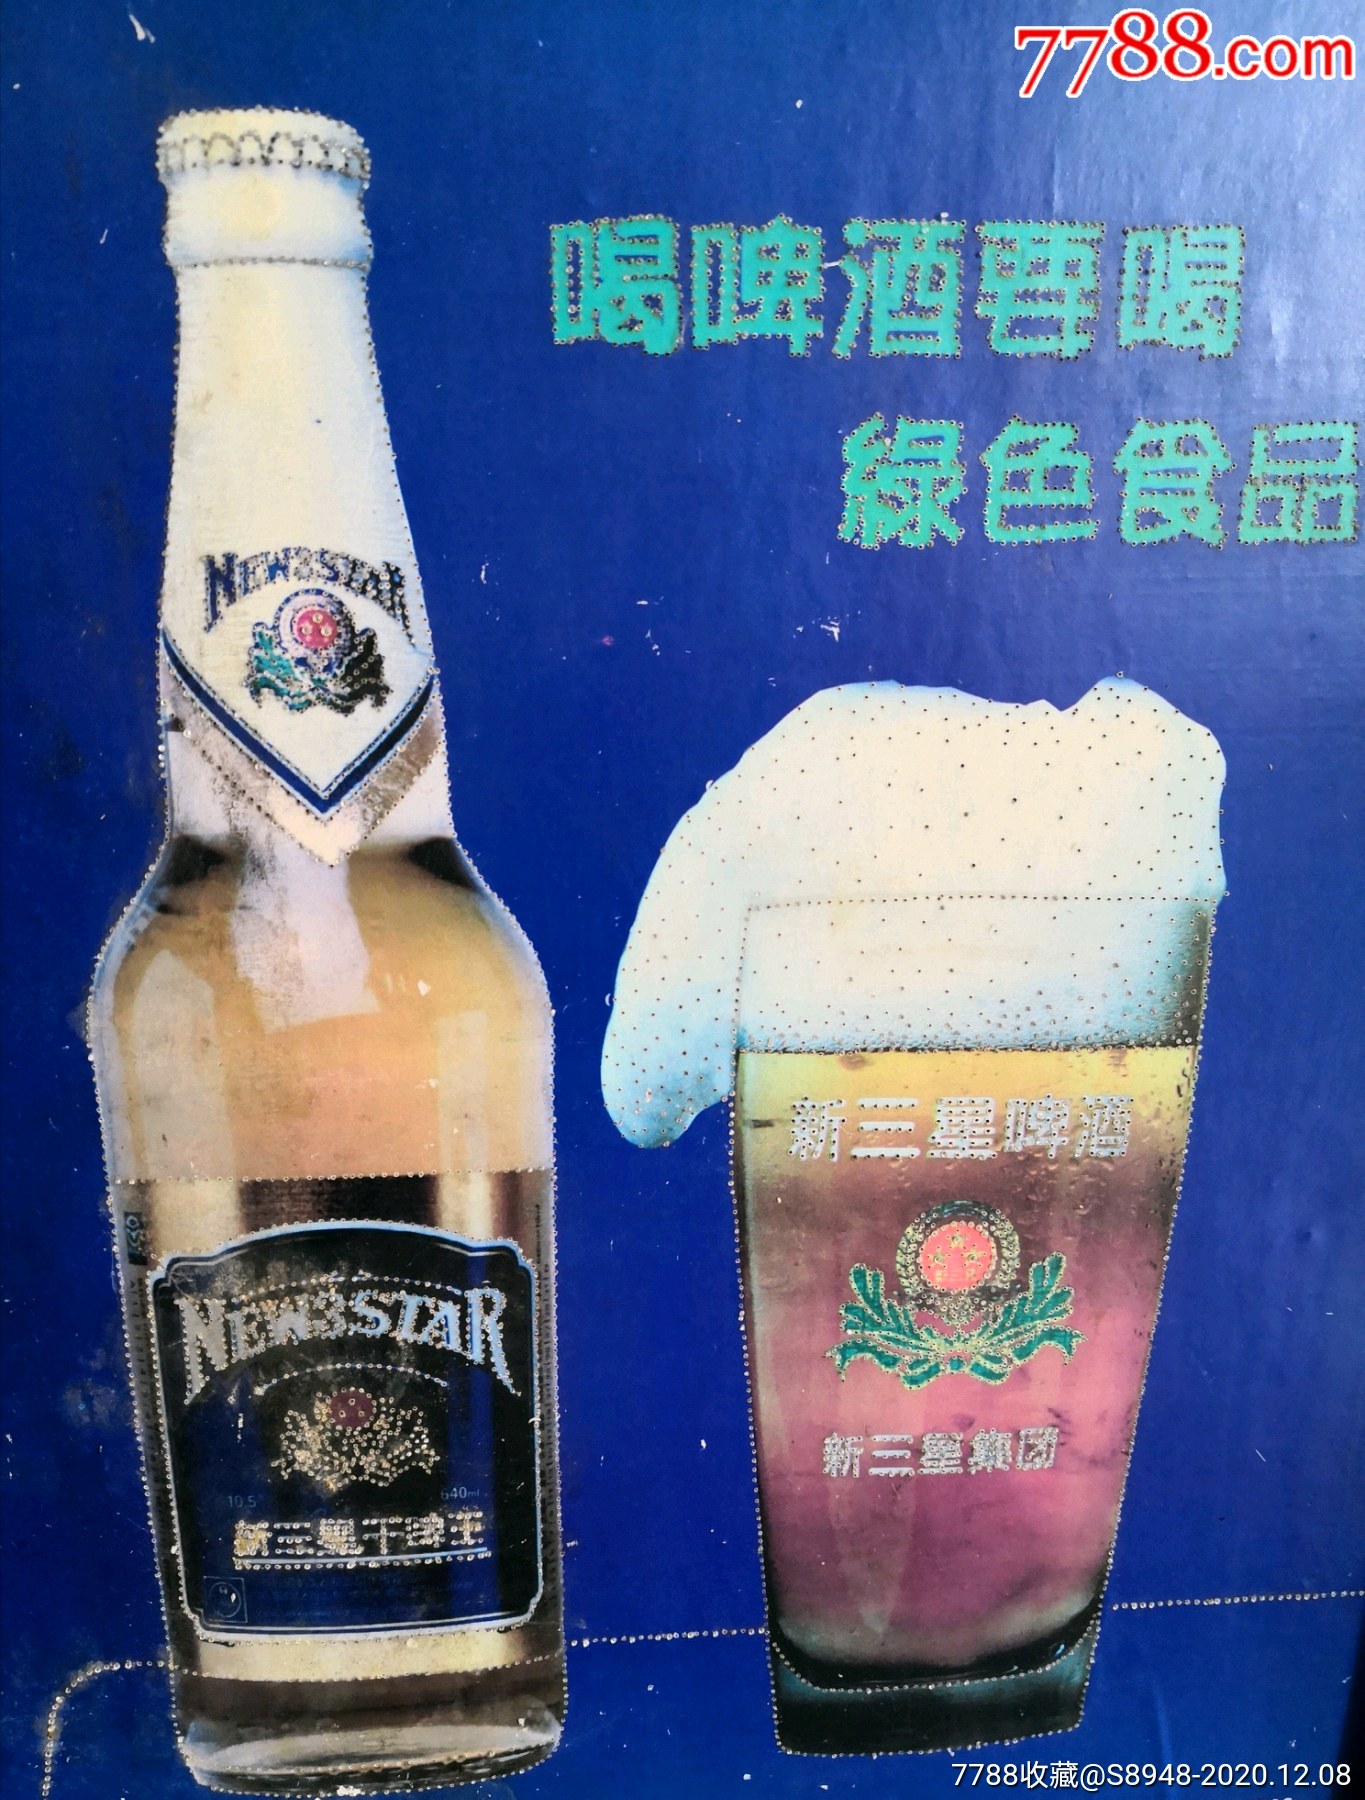 哈尔滨新三星啤酒图片